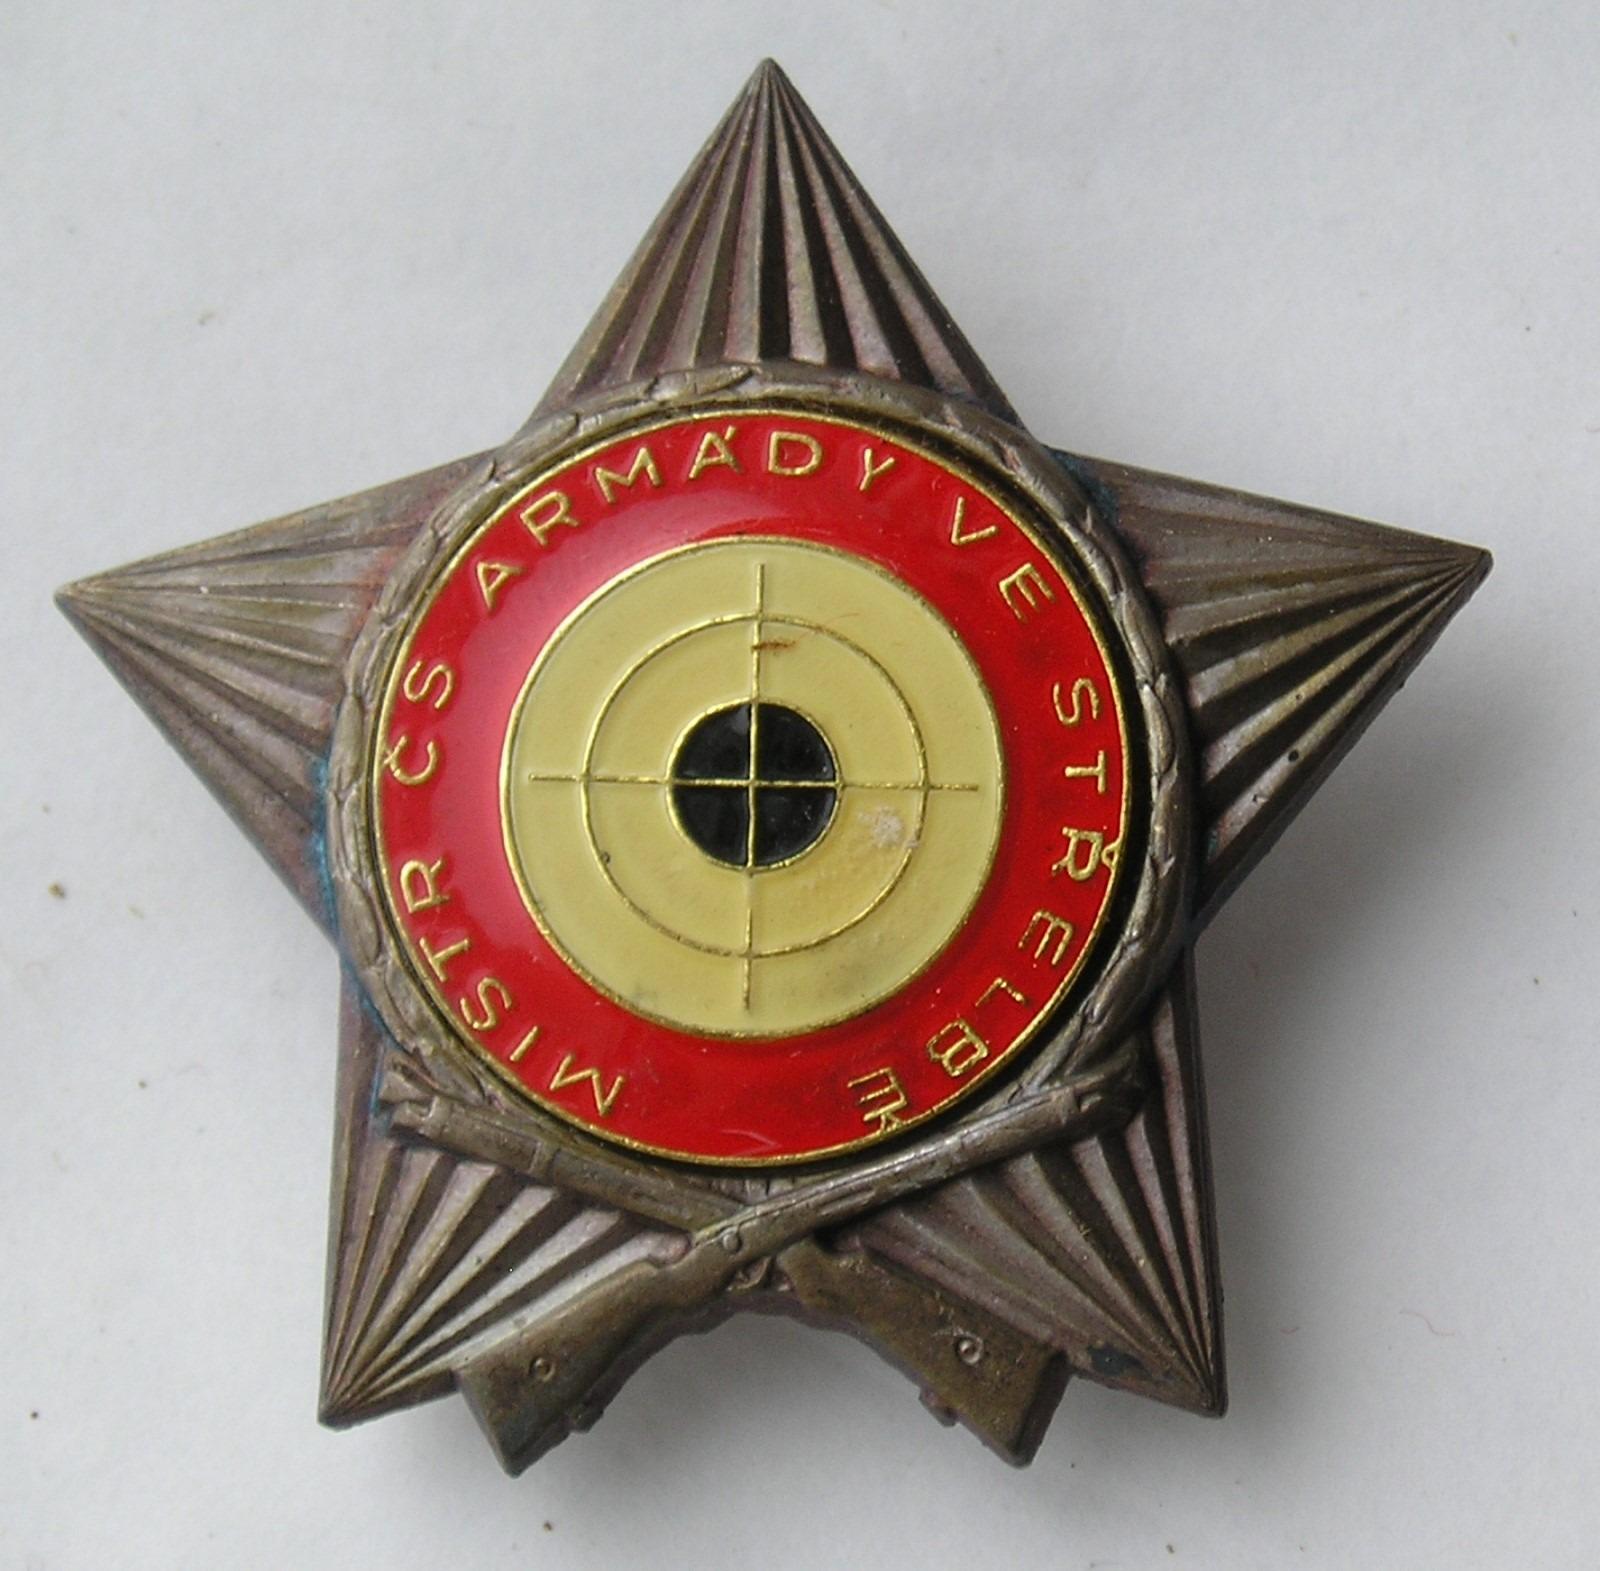 Majster čs. armády v streľbe - veľký typ - Odznaky, nášivky a medaily